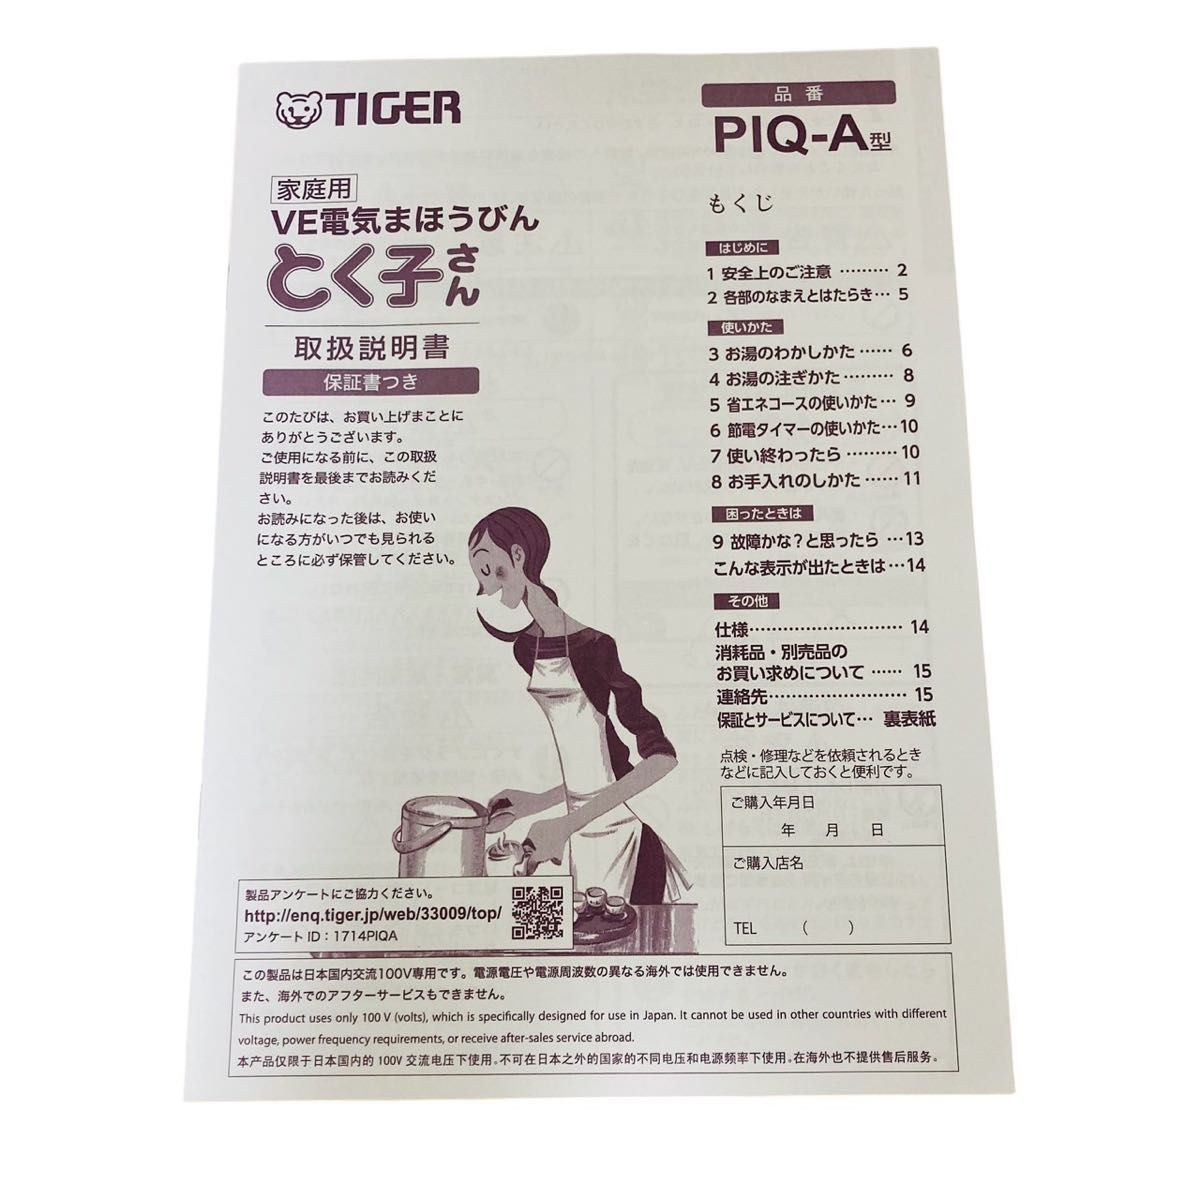 【美品】TIGER タイガー VE 電気まほうびん PIQ-A300 とく子さん 電気ポット タイガー魔法瓶 魔法瓶